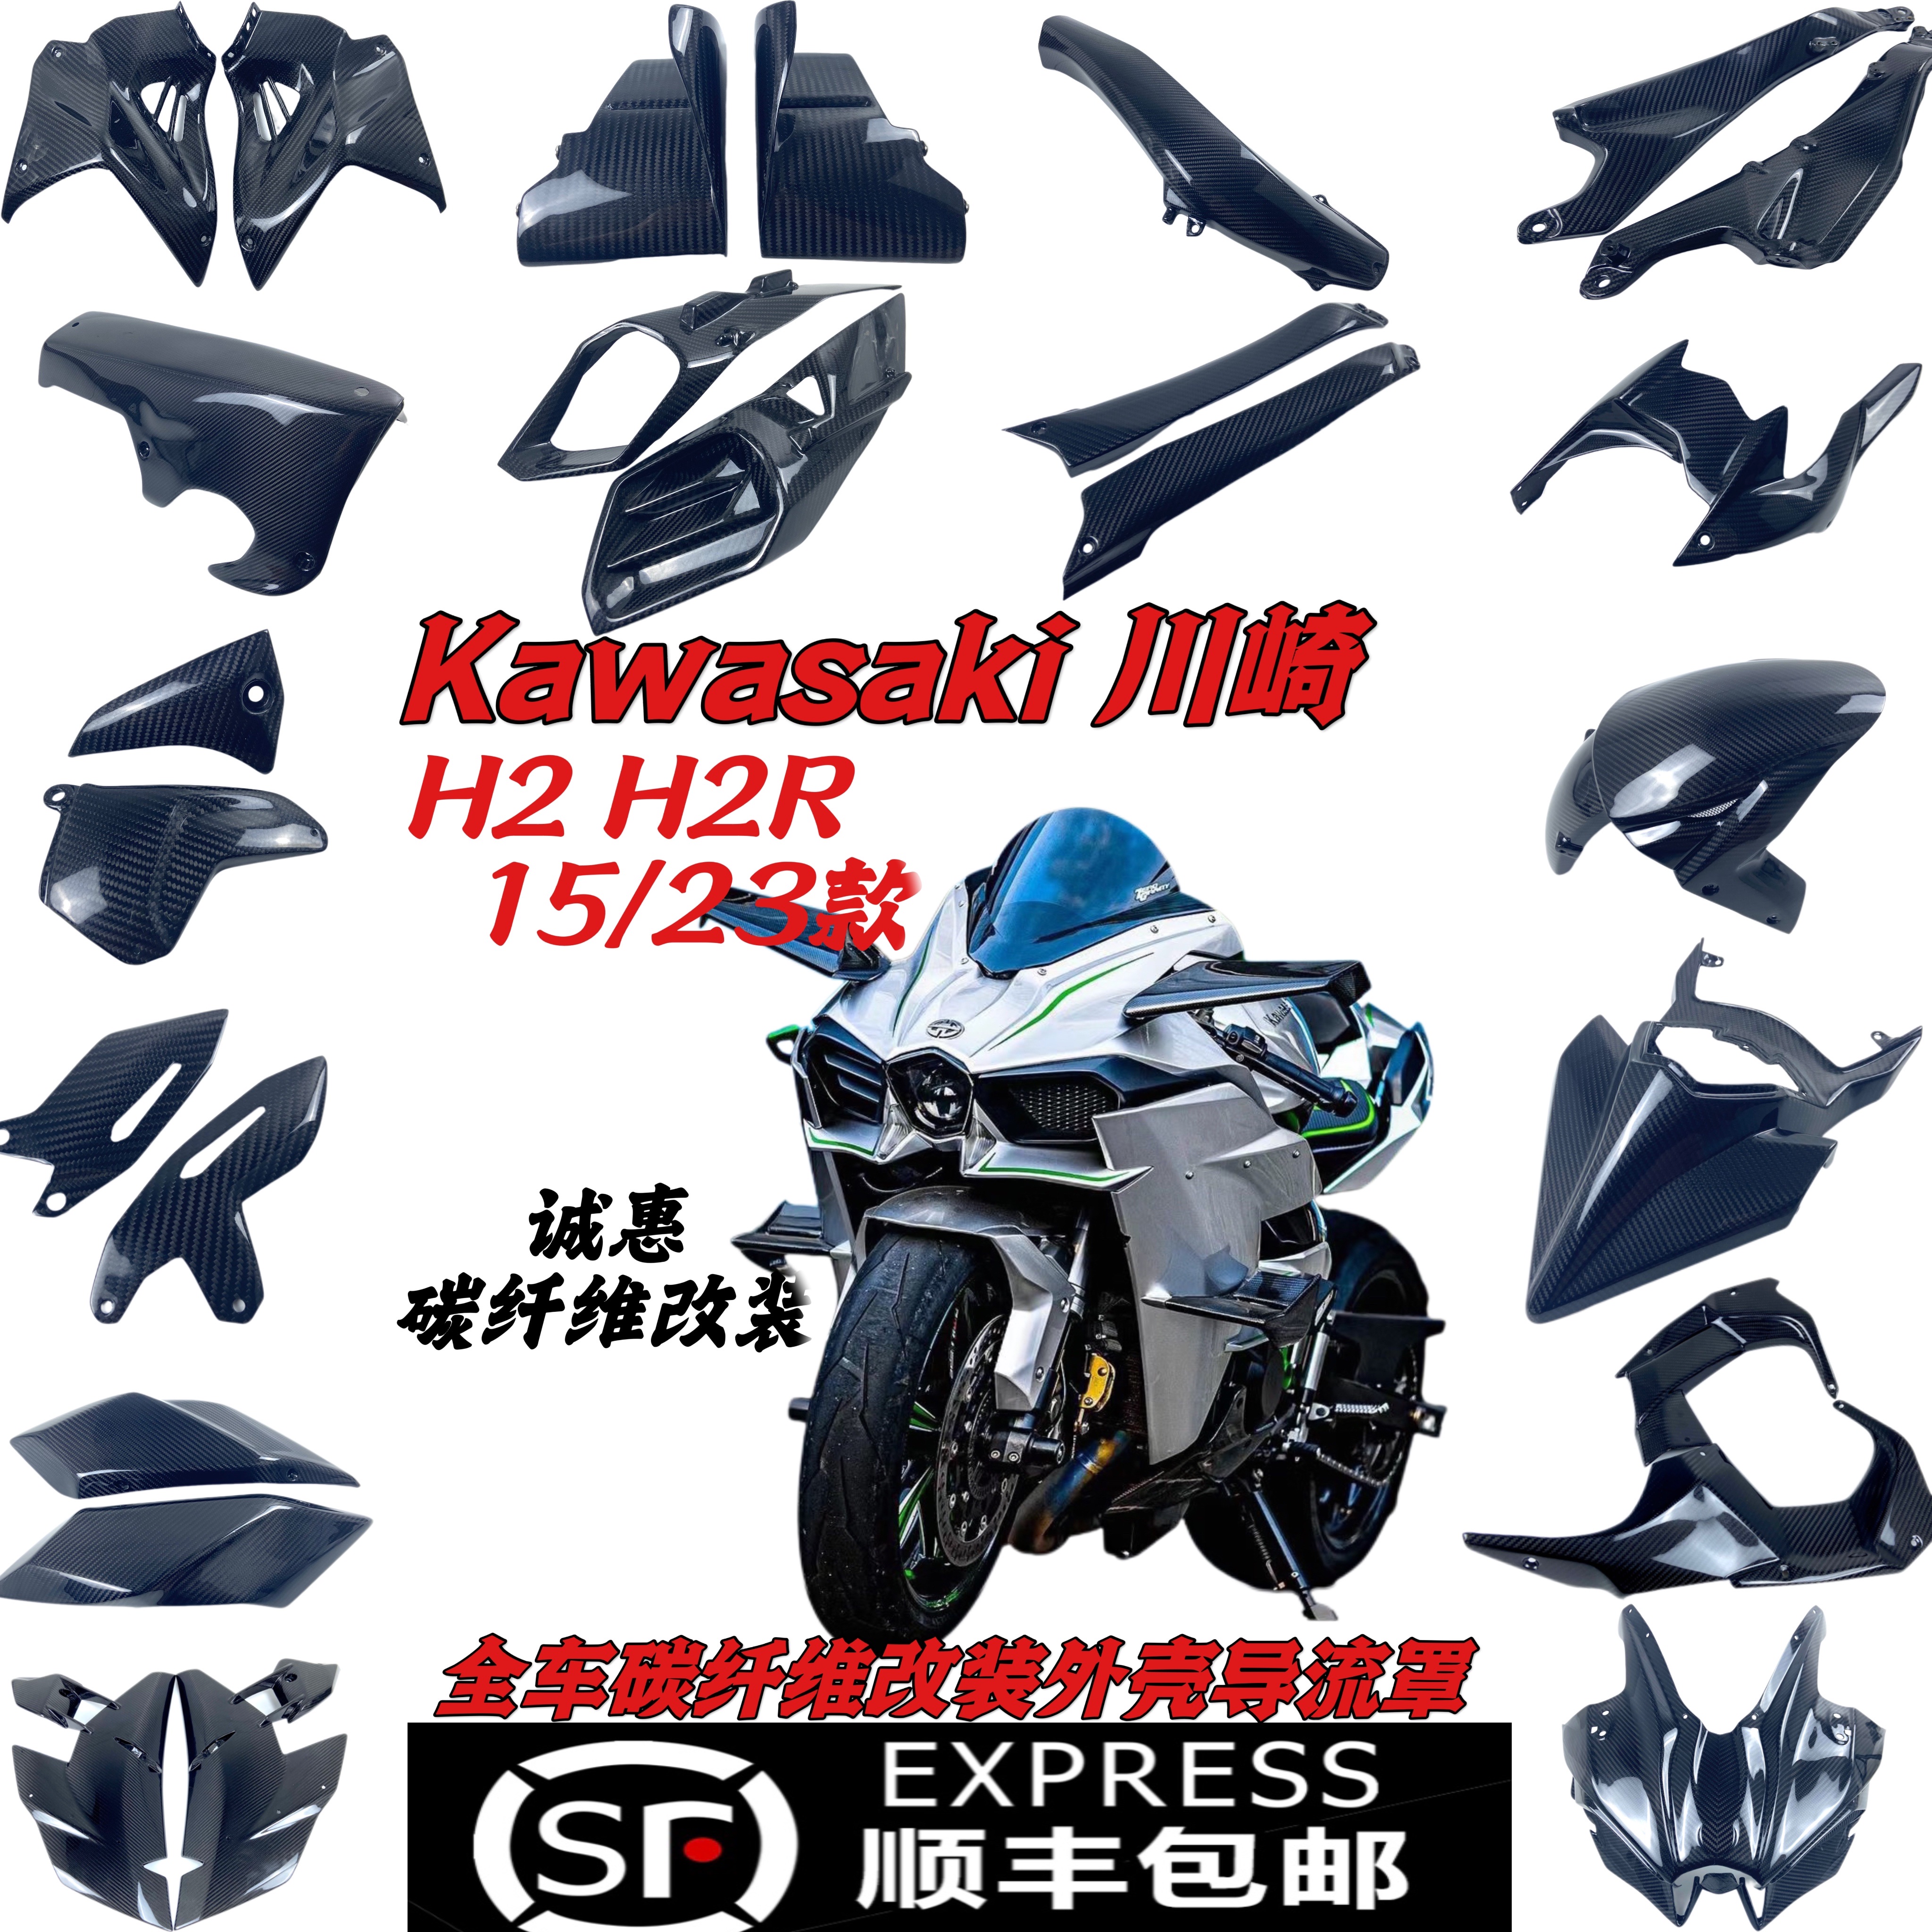 适用于Kawasaki川崎 H2 H2R 15/23 升级碳钎维外壳 改装干碳部件